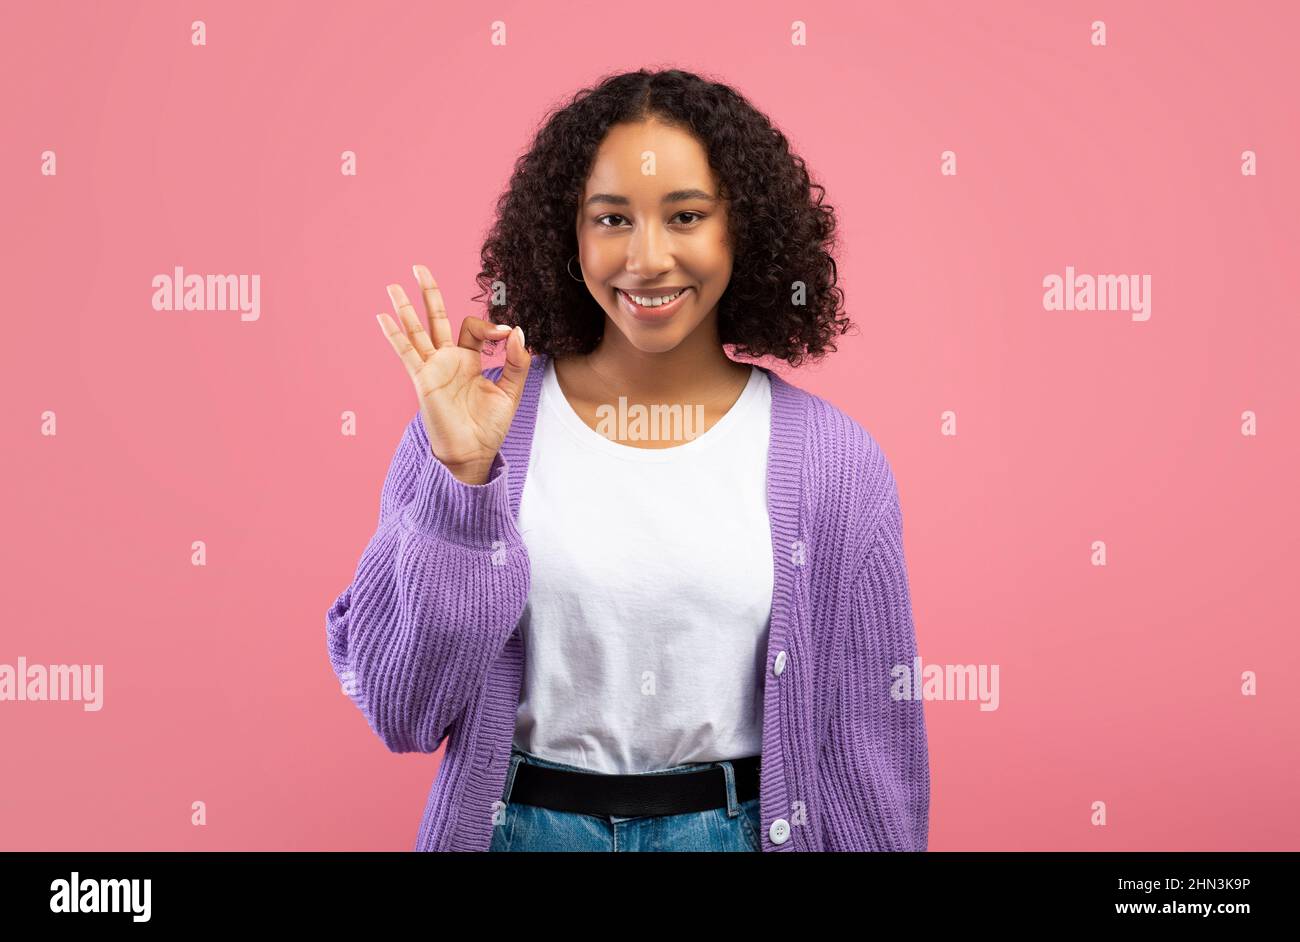 Lächelnde junge afroamerikanische Frau, die eine gute Geste zeigt, etwas auf rosa Hintergrund billigt oder empfiehlt Stockfoto